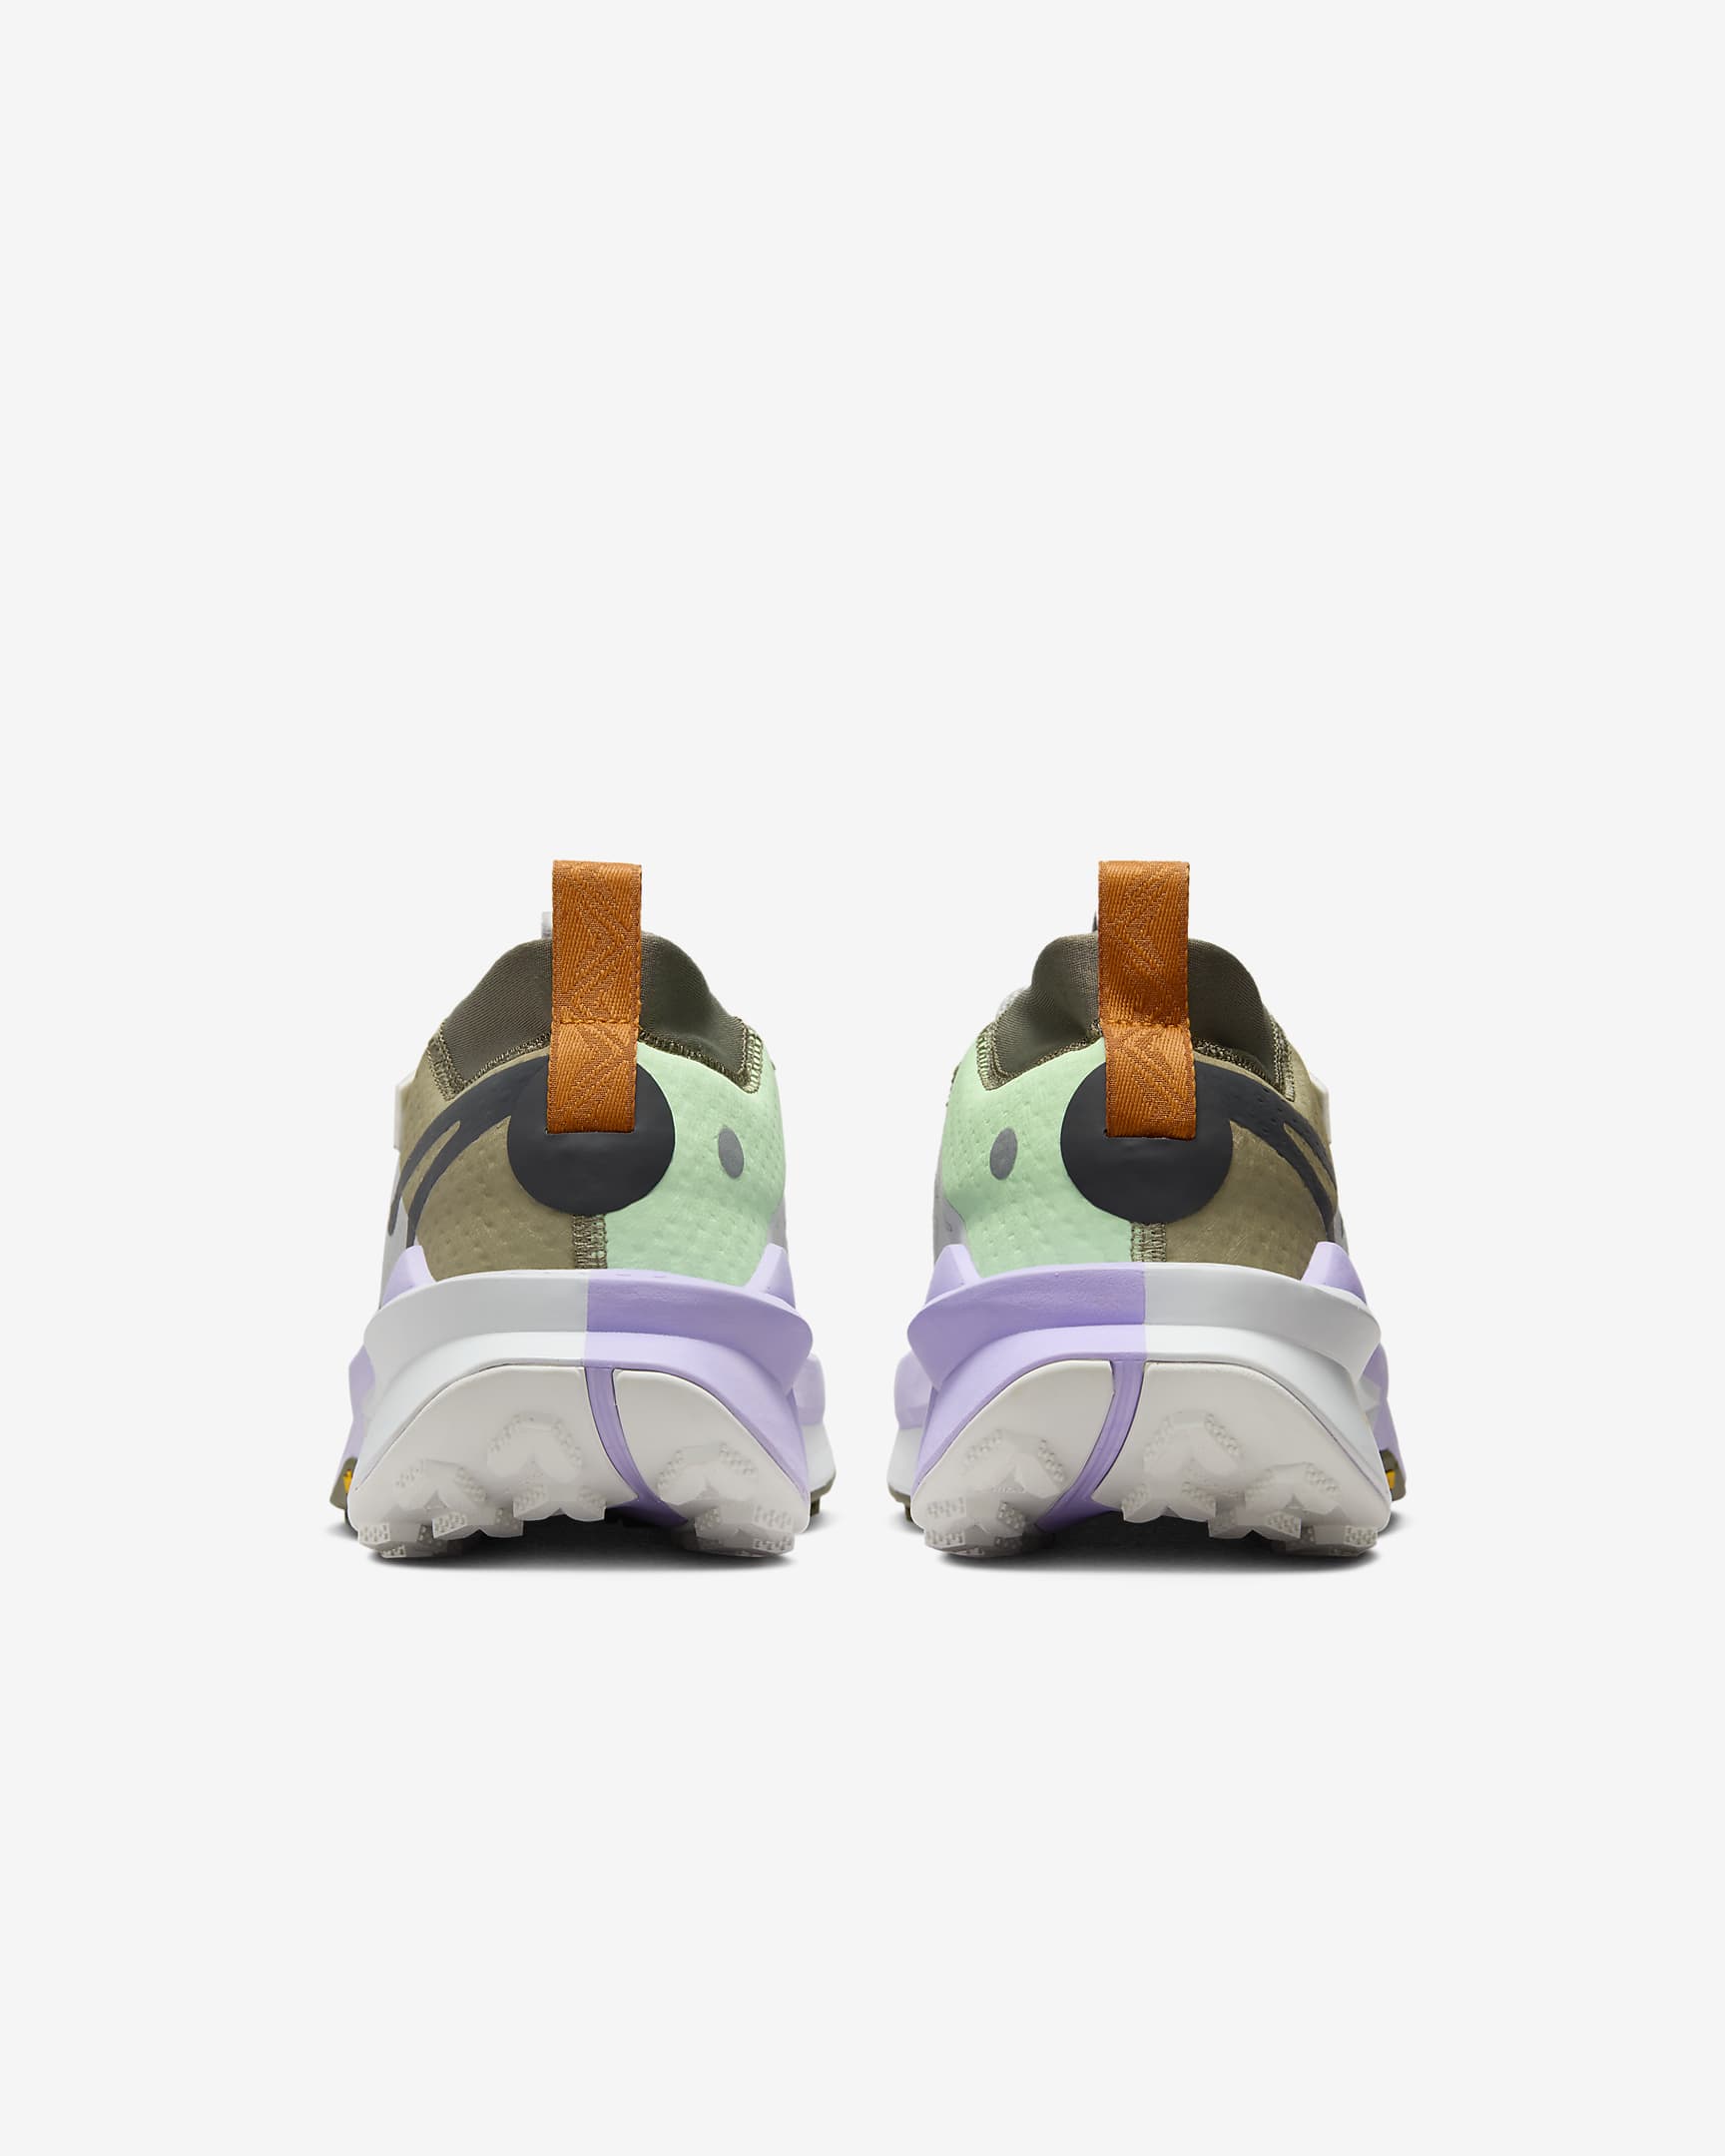 Terränglöparsko Nike Zegama Trail 2 för män - Light Iron Ore/Vapor Green/Lilac Bloom/Anthracite